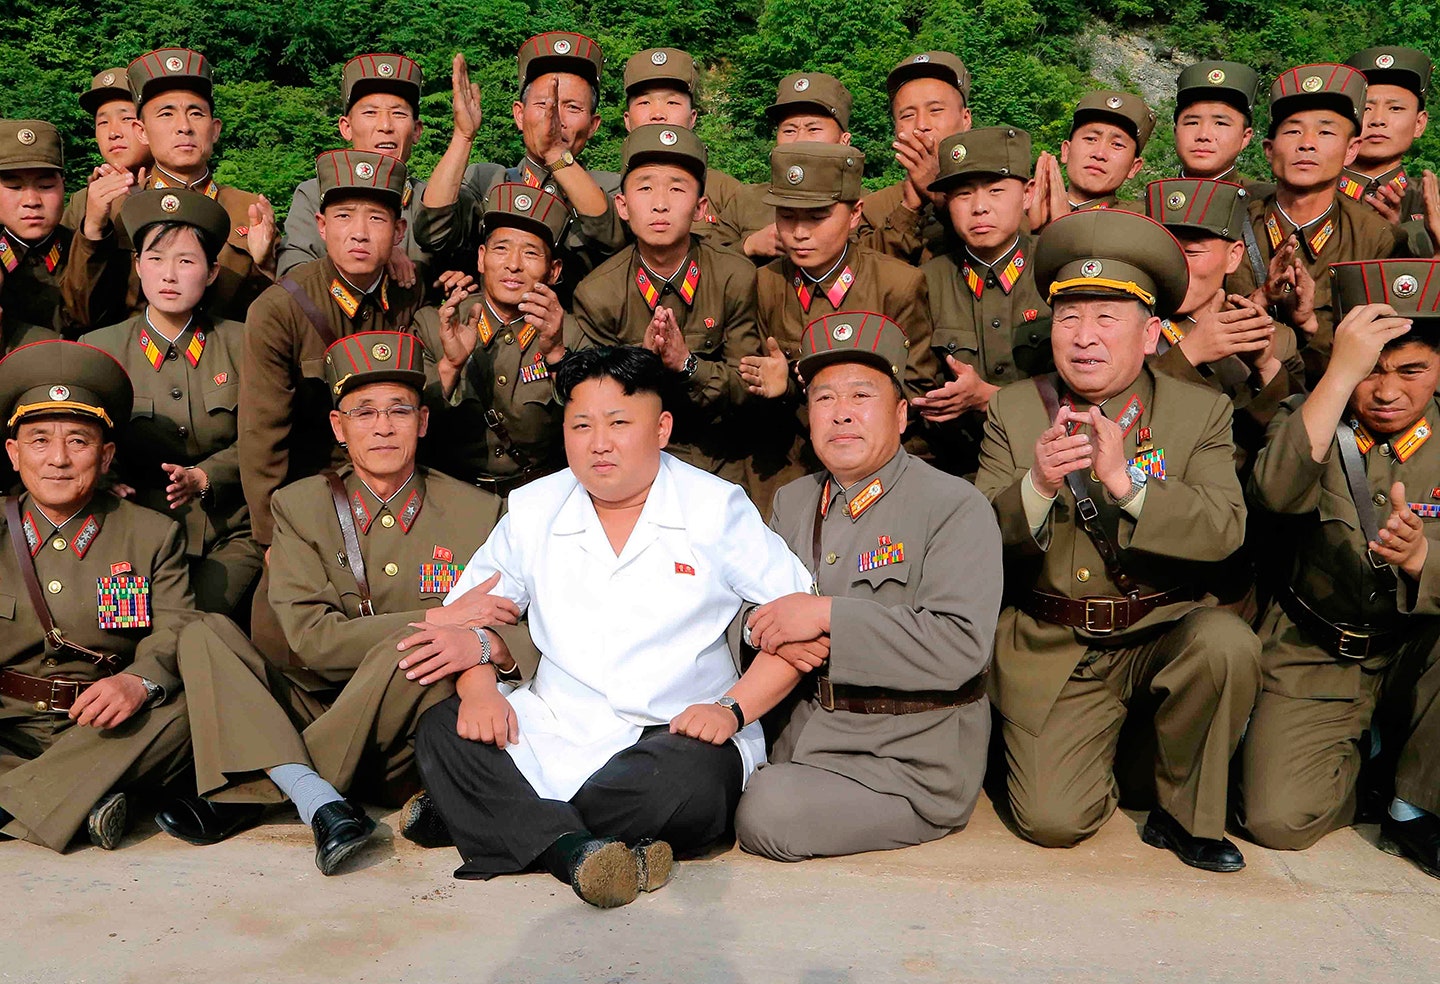 Kim Jong-un alive and kicking